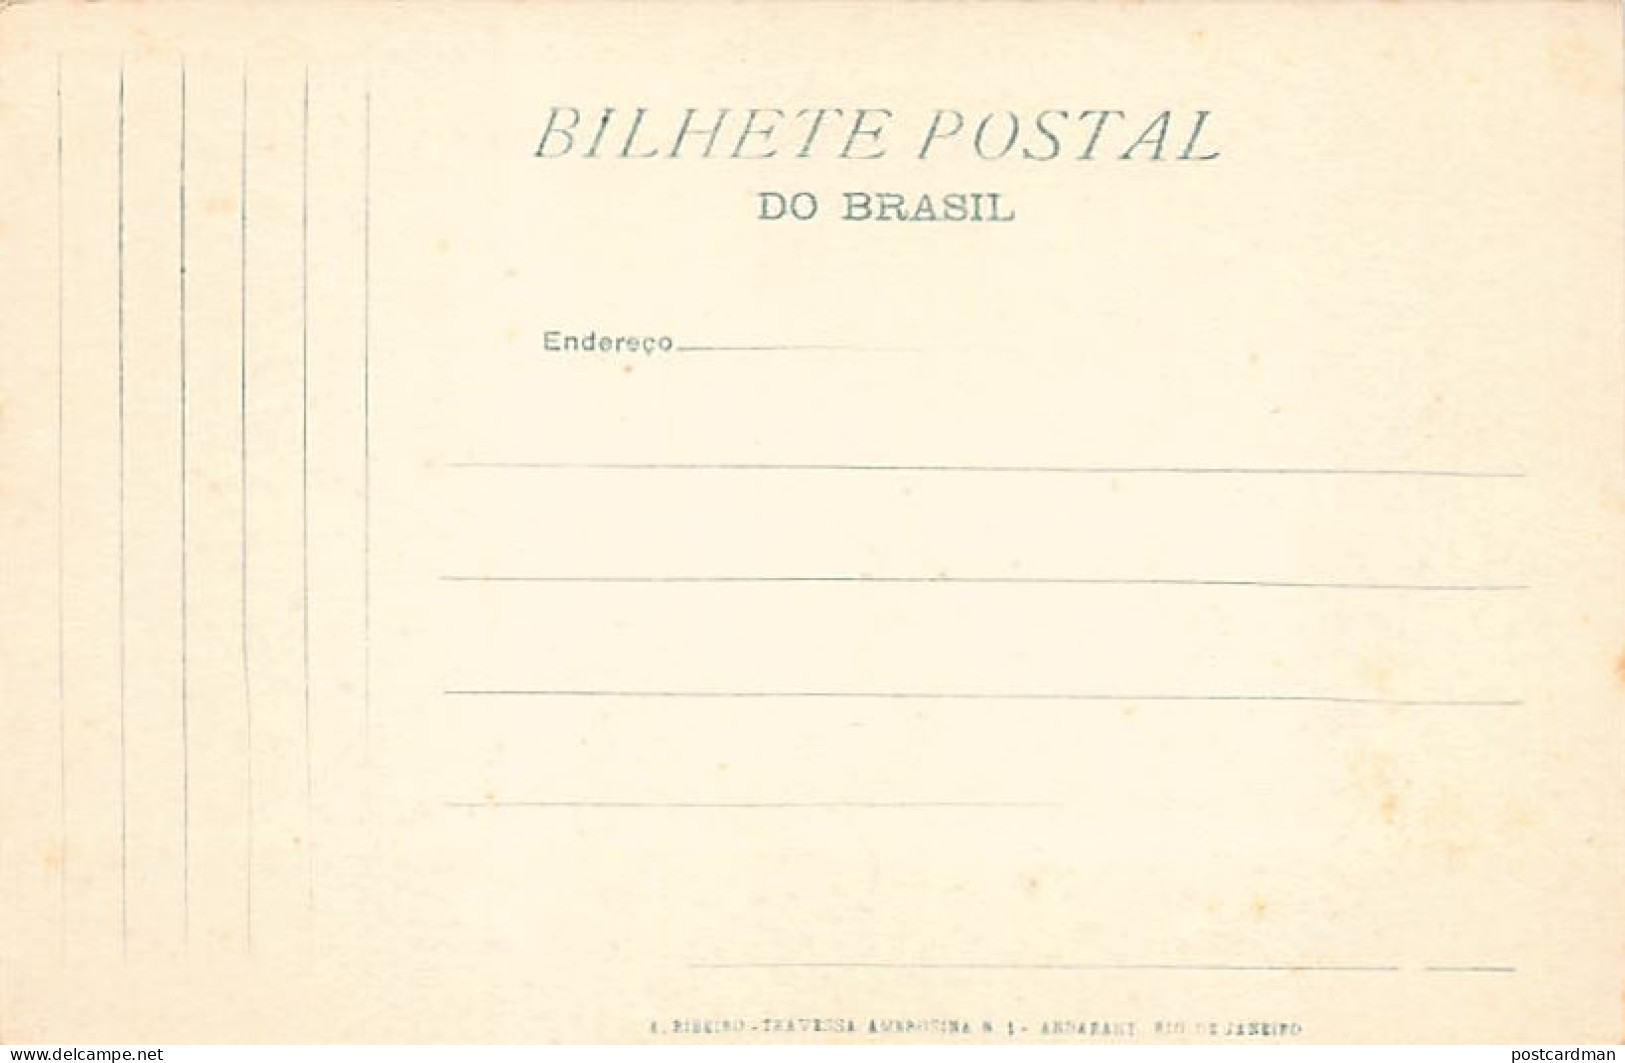 Brasil - RIO DE JANEIRO - Entrada Vista Do Sylvestre - Ed. A. Ribeiro 156 - Autres & Non Classés